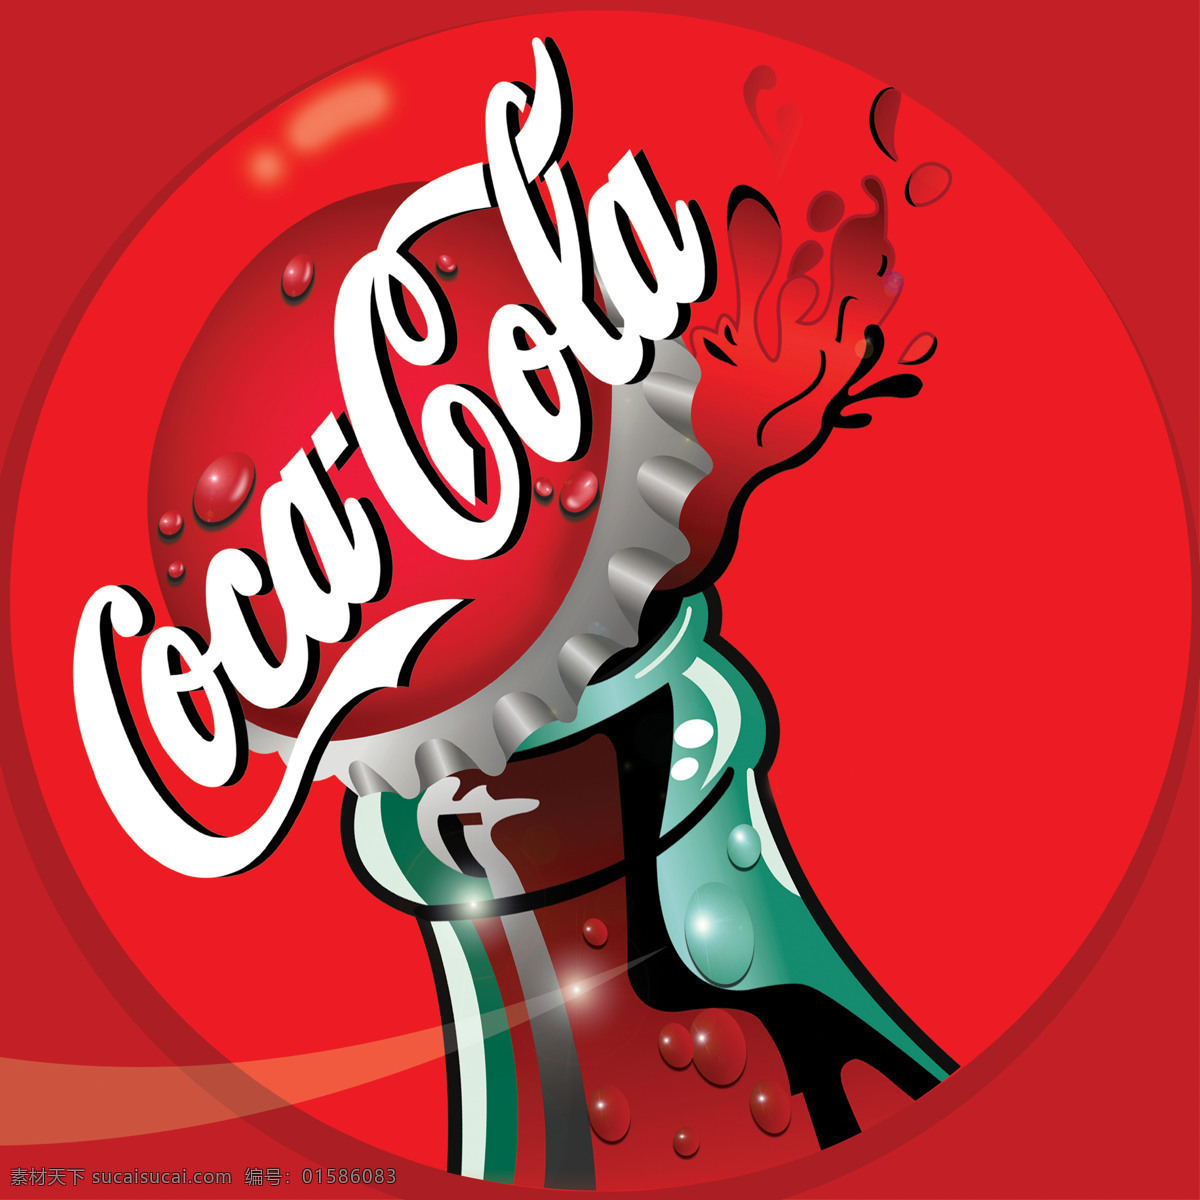 可口可乐 高清 广告 logo 亮光效果 红色背景 设计图库